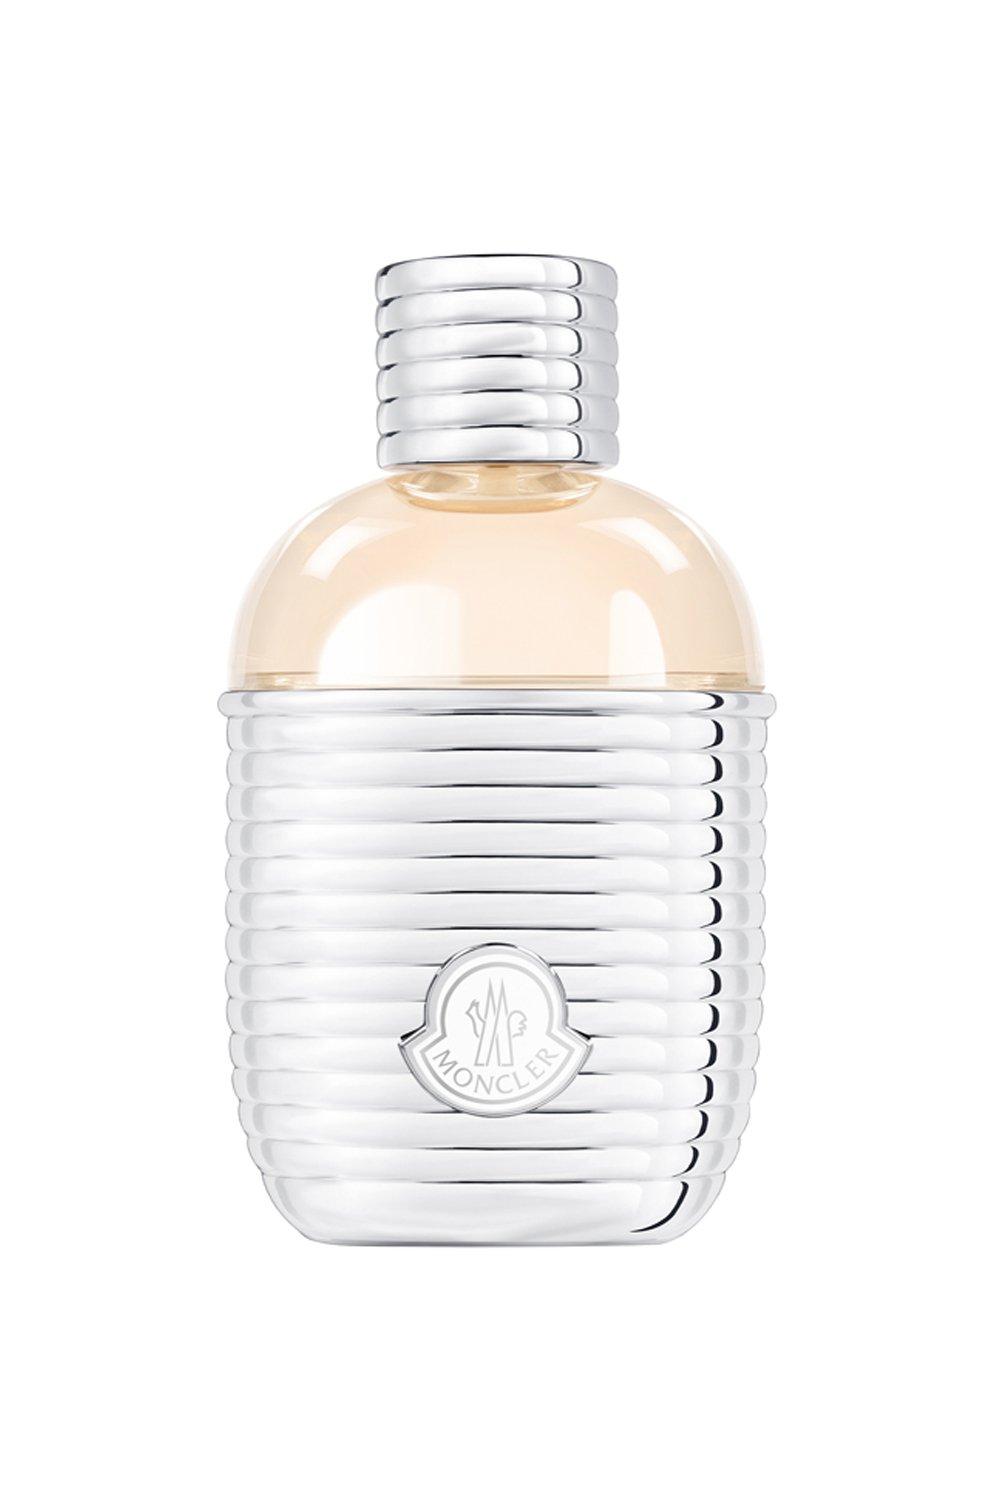 Fragrance | Moncler Pour Femme Eau De Parfum | Moncler